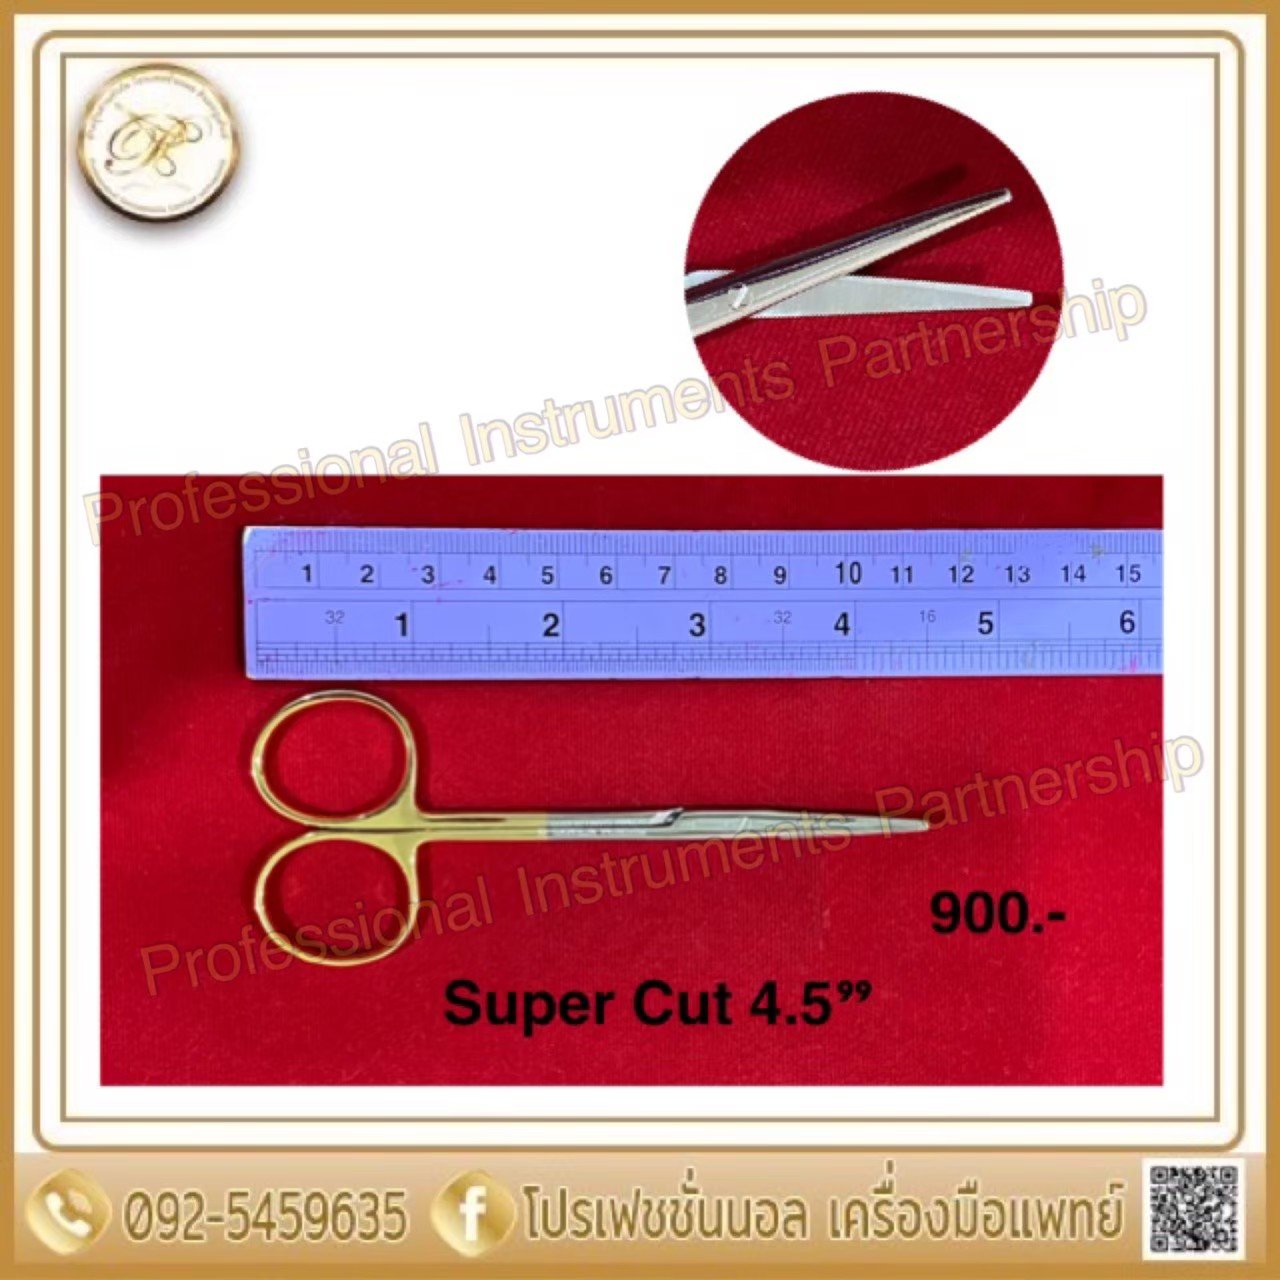 Super Cut 4.5"